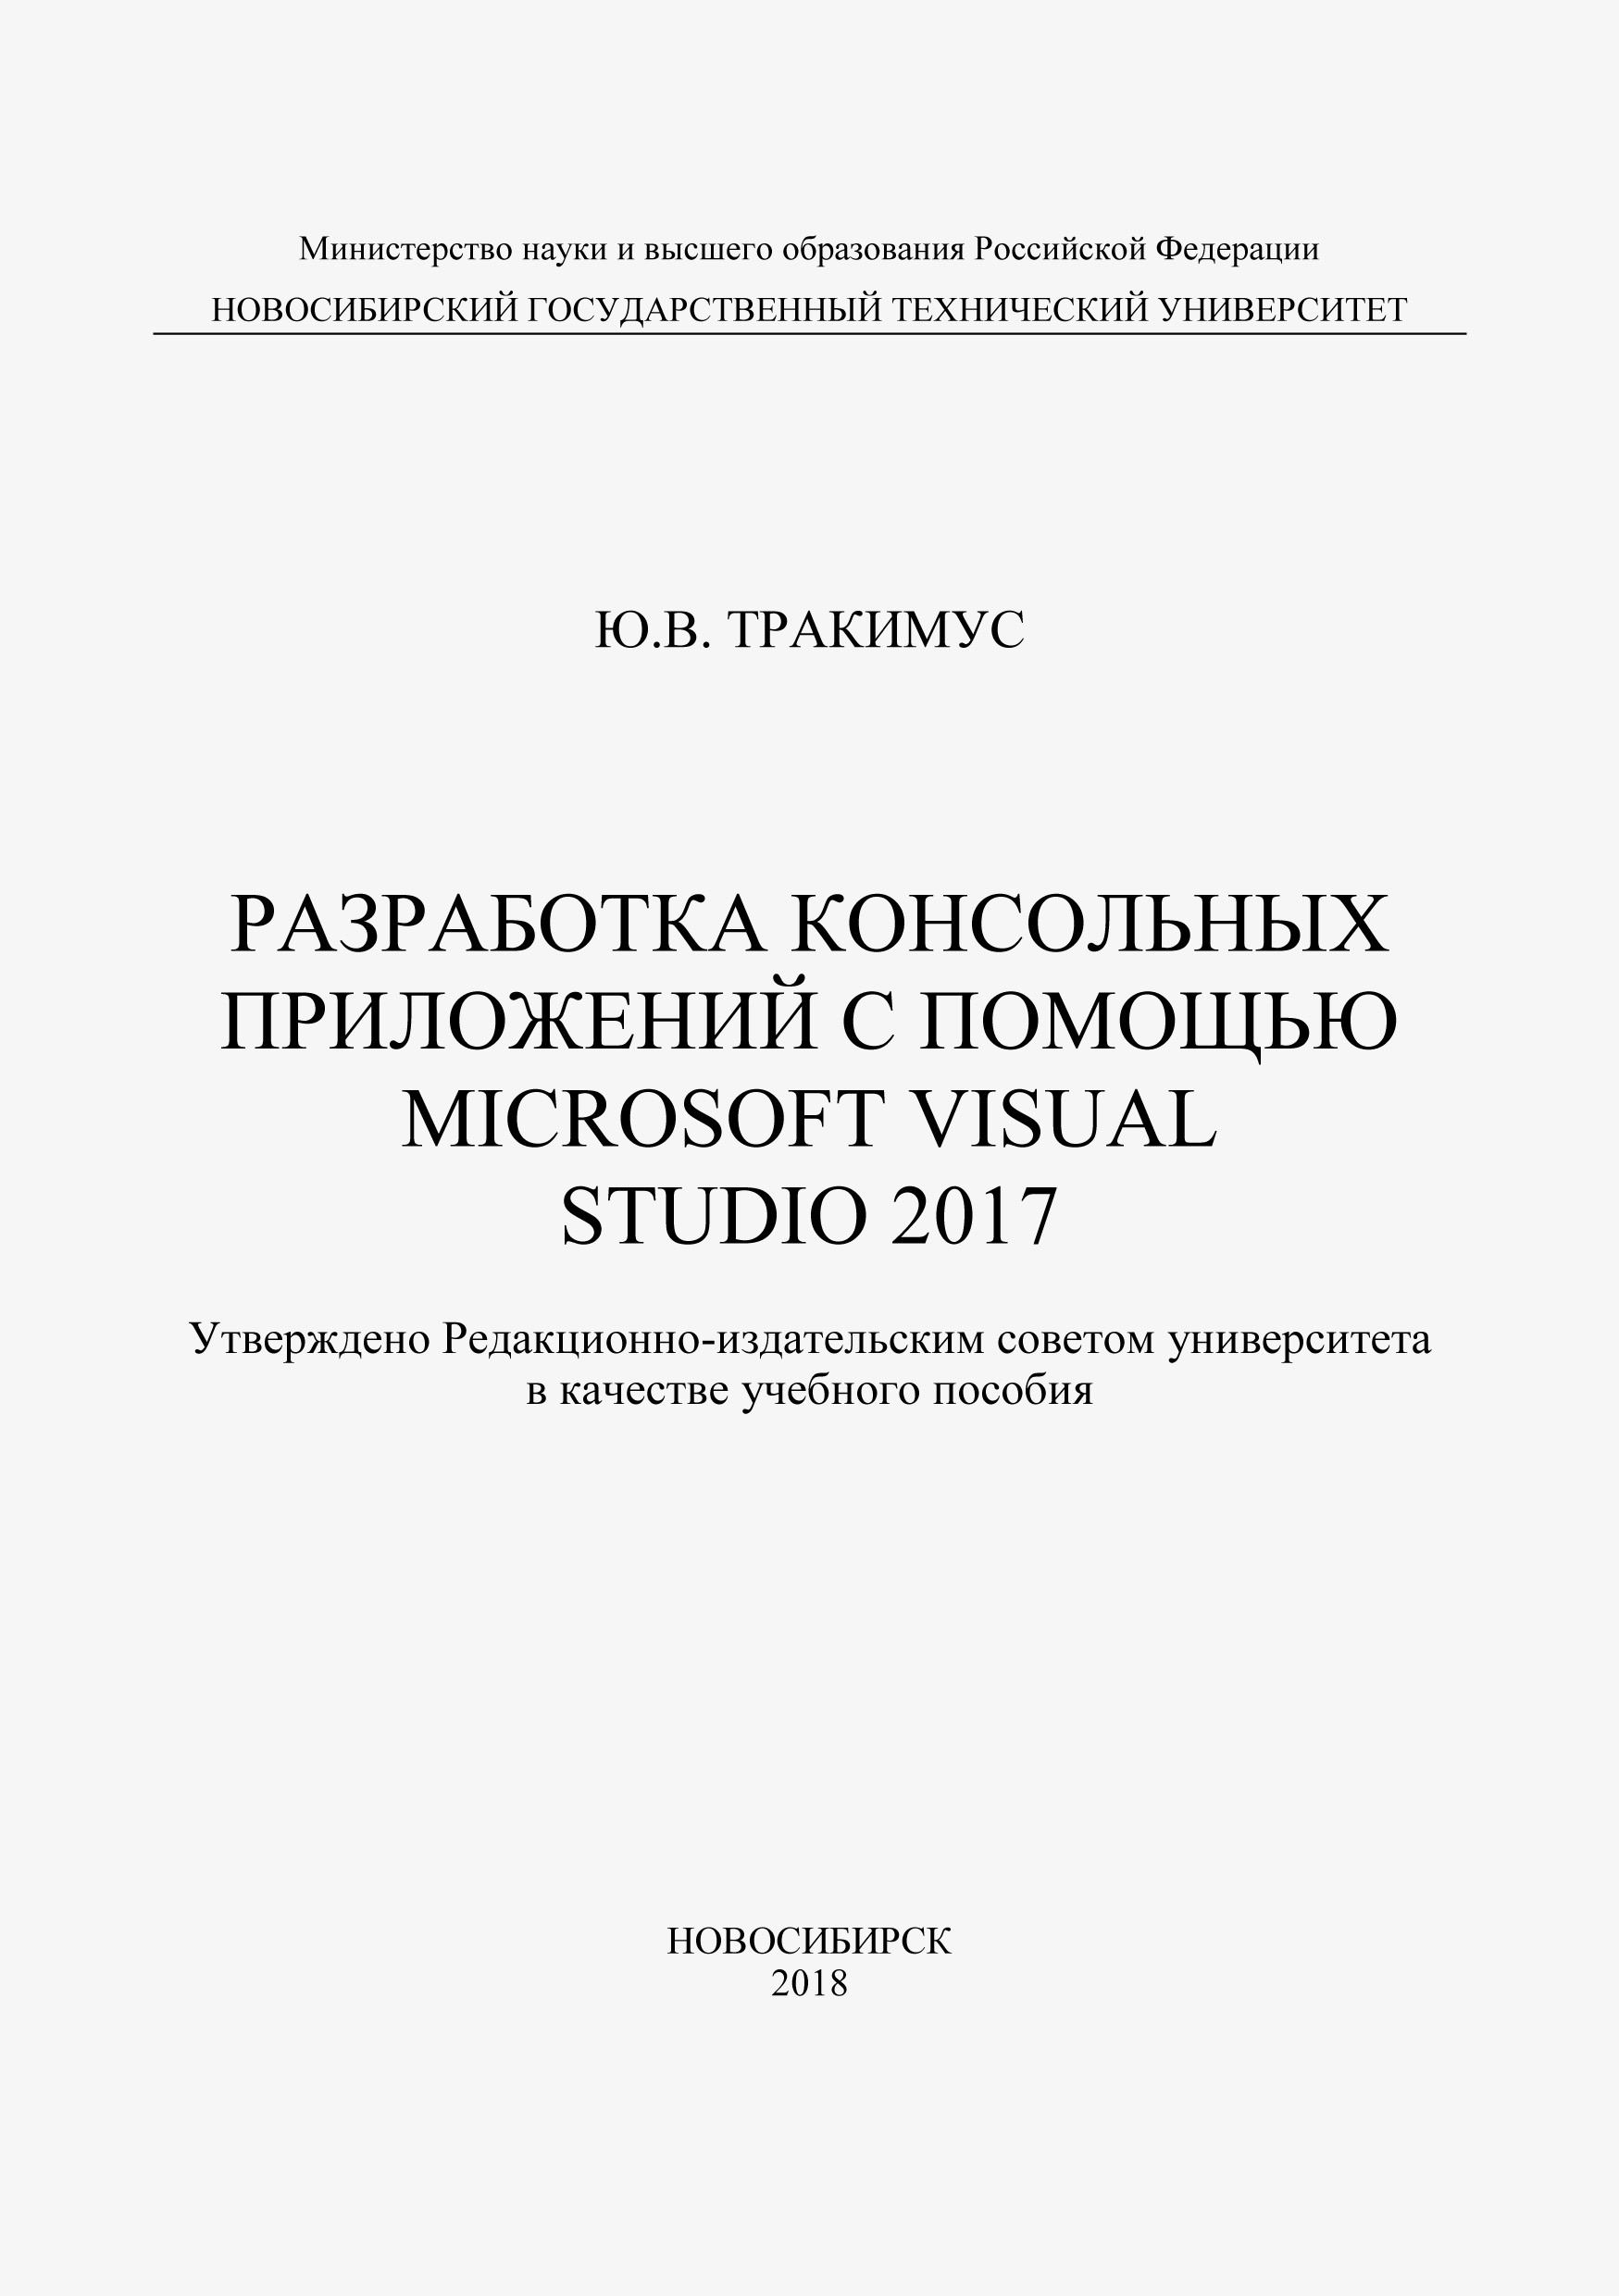 Книга  Разработка консольных приложений с помощью Microsoft Visual Studio 2017 созданная Ю. В. Тракимус может относится к жанру программирование, учебники и пособия для вузов. Стоимость электронной книги Разработка консольных приложений с помощью Microsoft Visual Studio 2017 с идентификатором 48430748 составляет 103.00 руб.